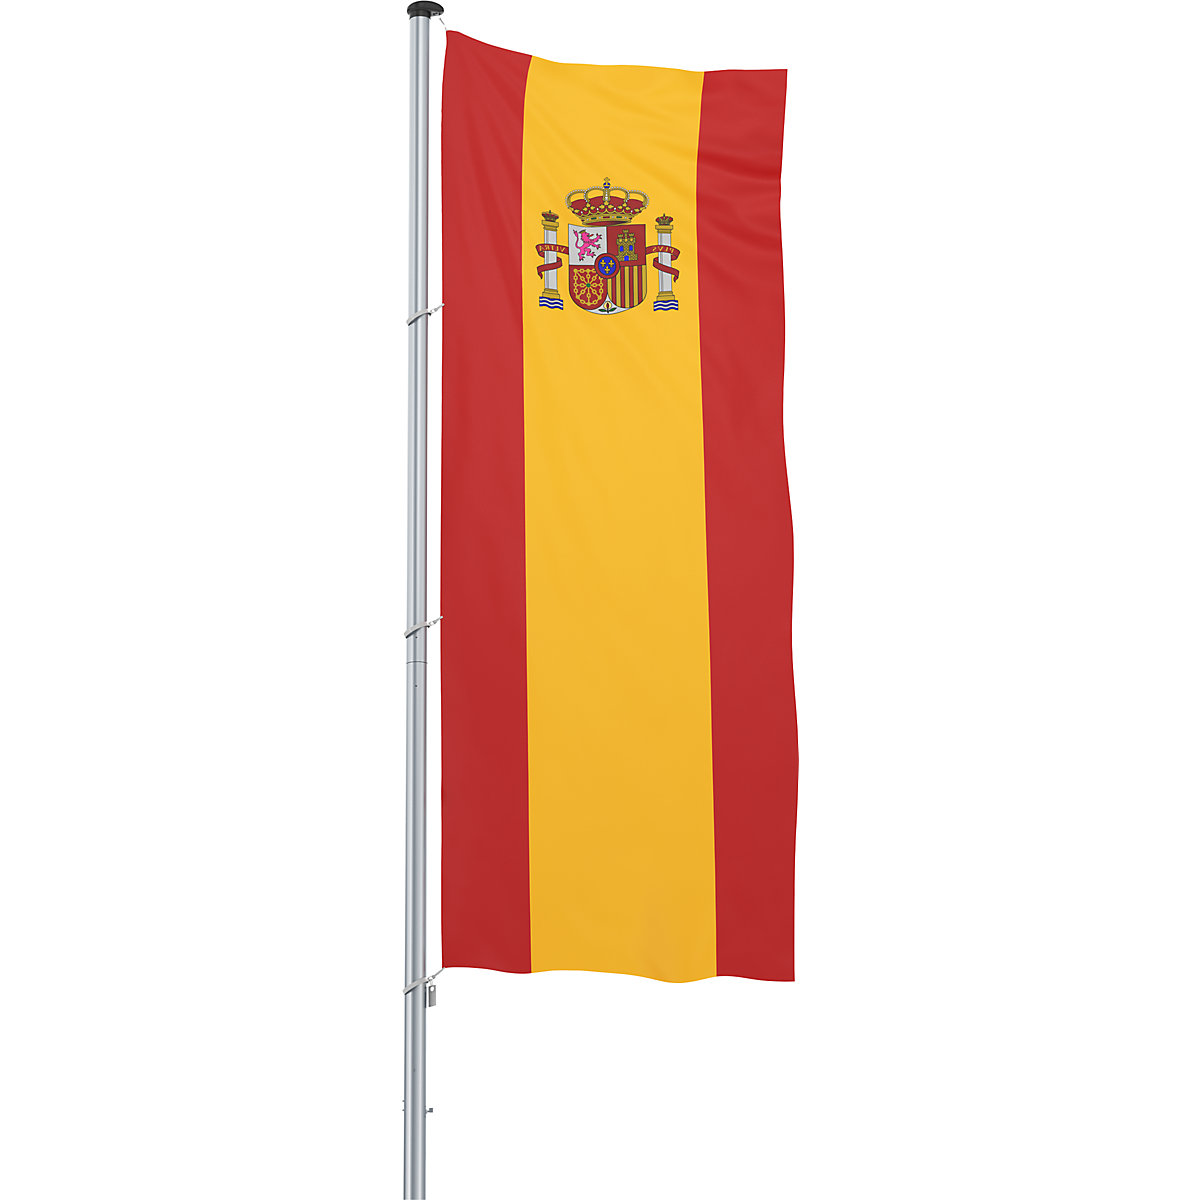 Bandiera/Bandiera nazionale – Mannus, formato 1,2 x 3 m, Spagna-17